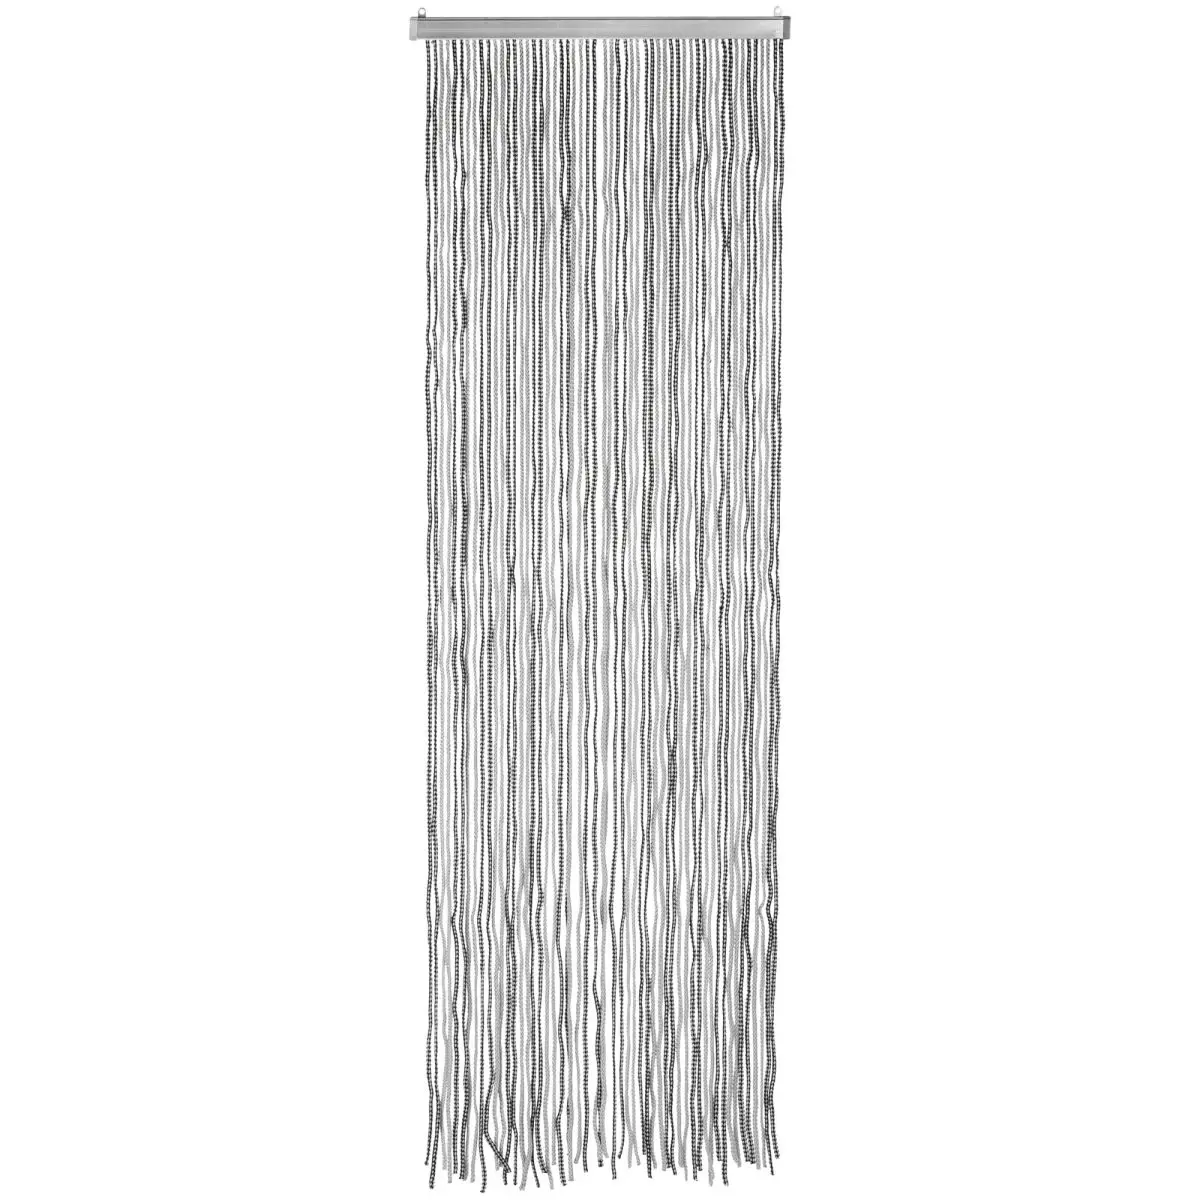 Vorhang Korda anthrazit/silber - Gre 100 x 220 cm